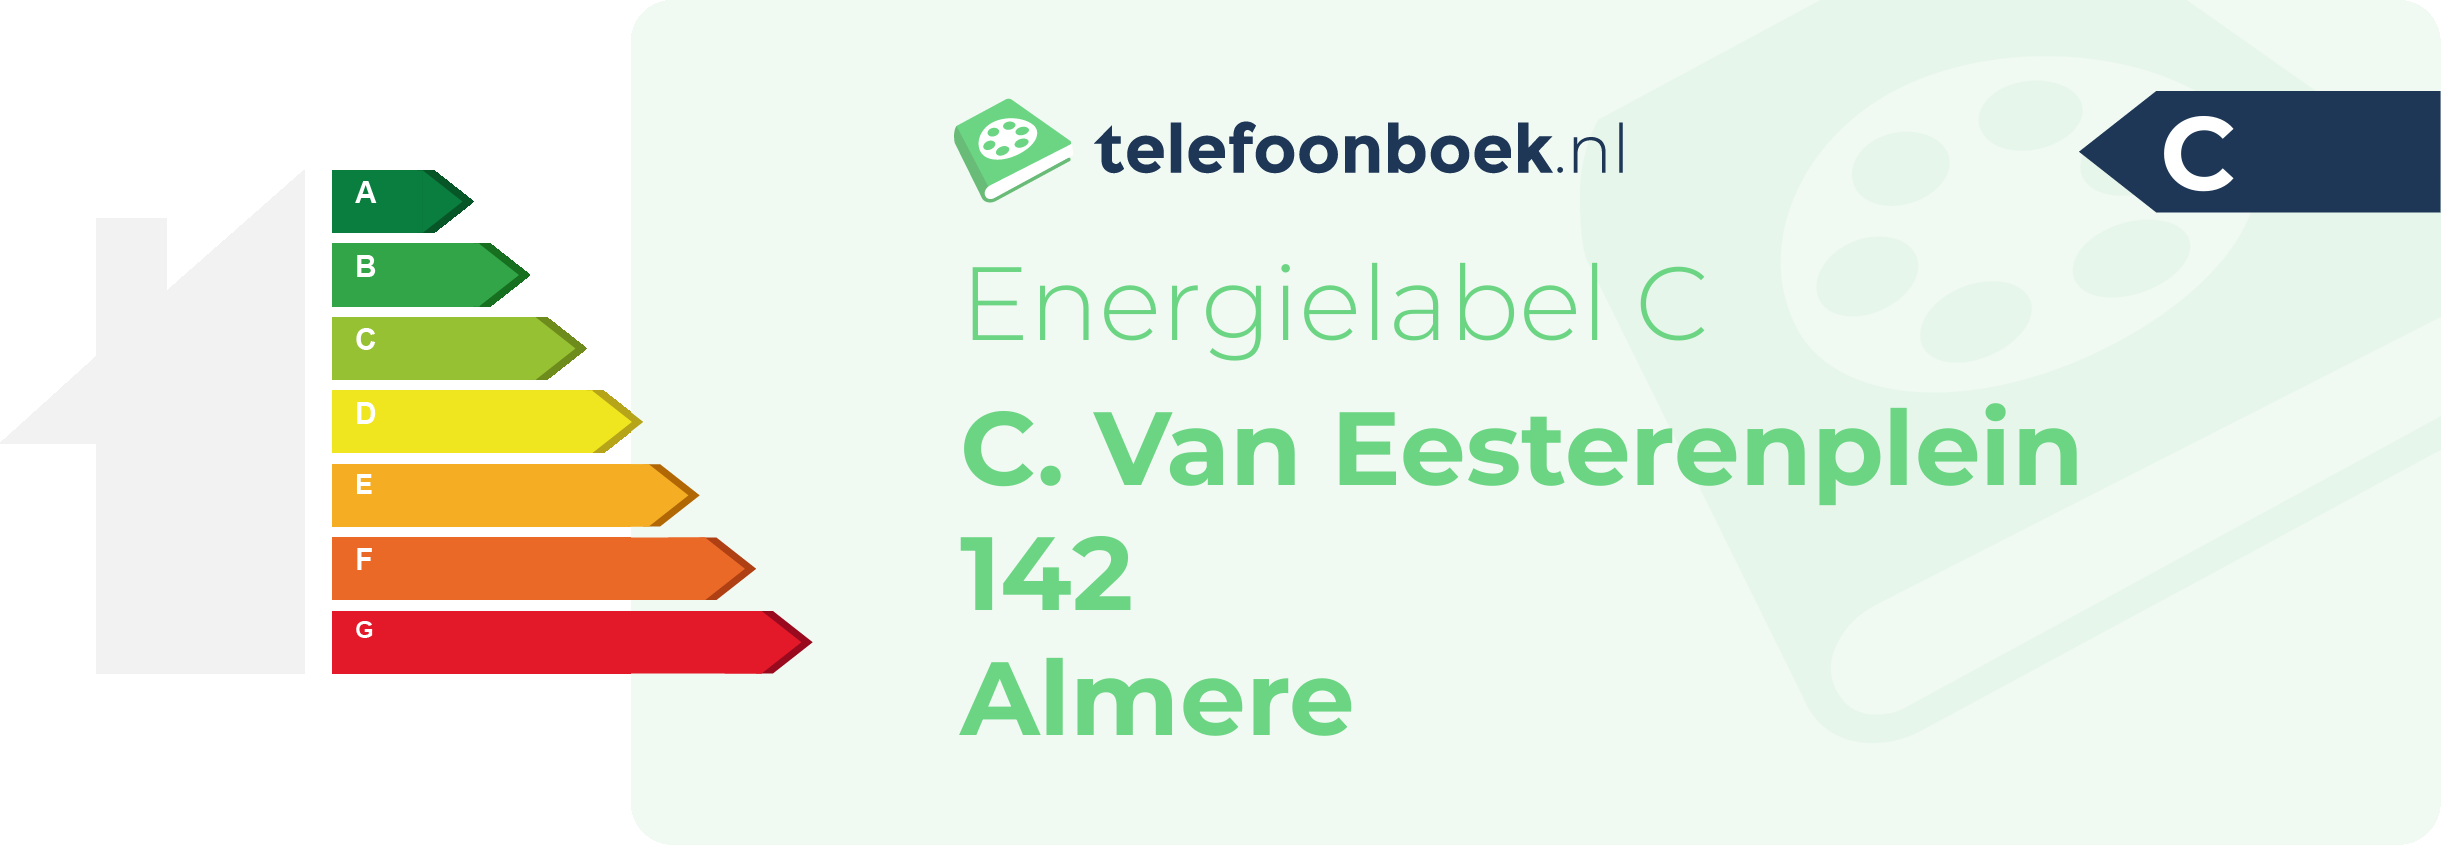 Energielabel C. Van Eesterenplein 142 Almere